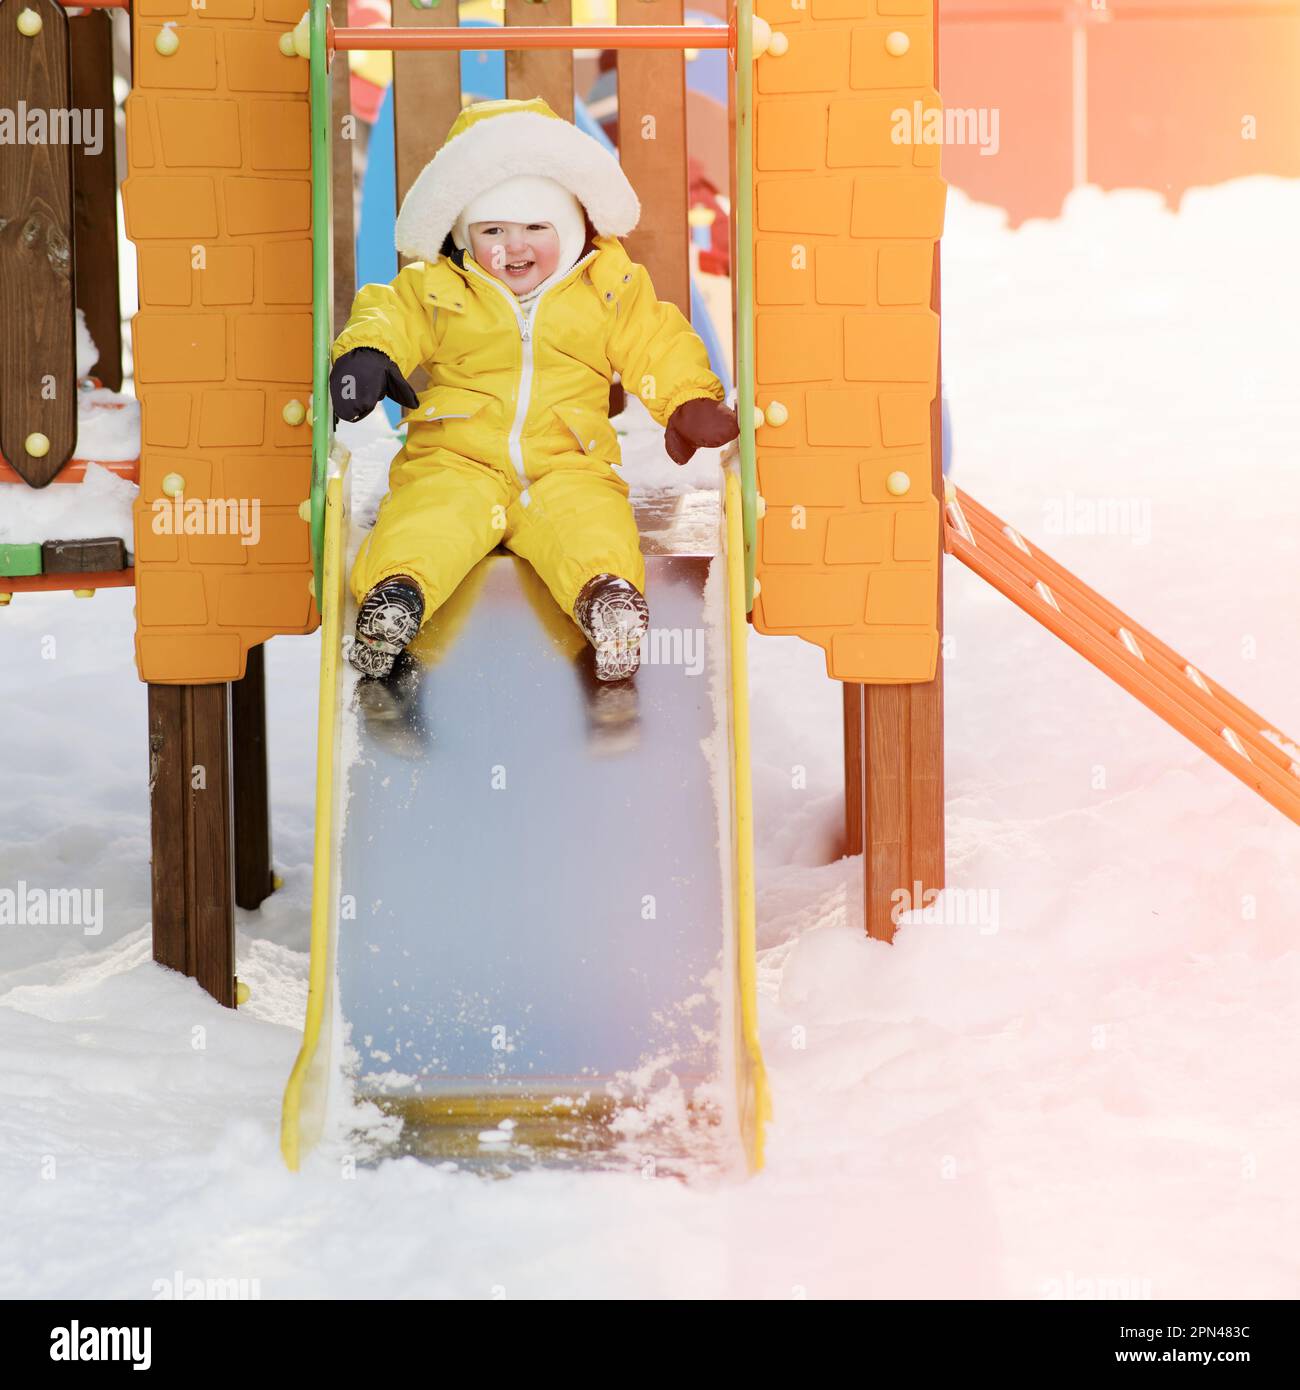 Der kleine Junge fährt auf einer Rutsche und spielt auf einem Winterspielplatz. Ein Kind in einem gelben Overall auf einer Kinderrutsche im Schnee. Ein Kind im Alter von einem Jahr Stockfoto